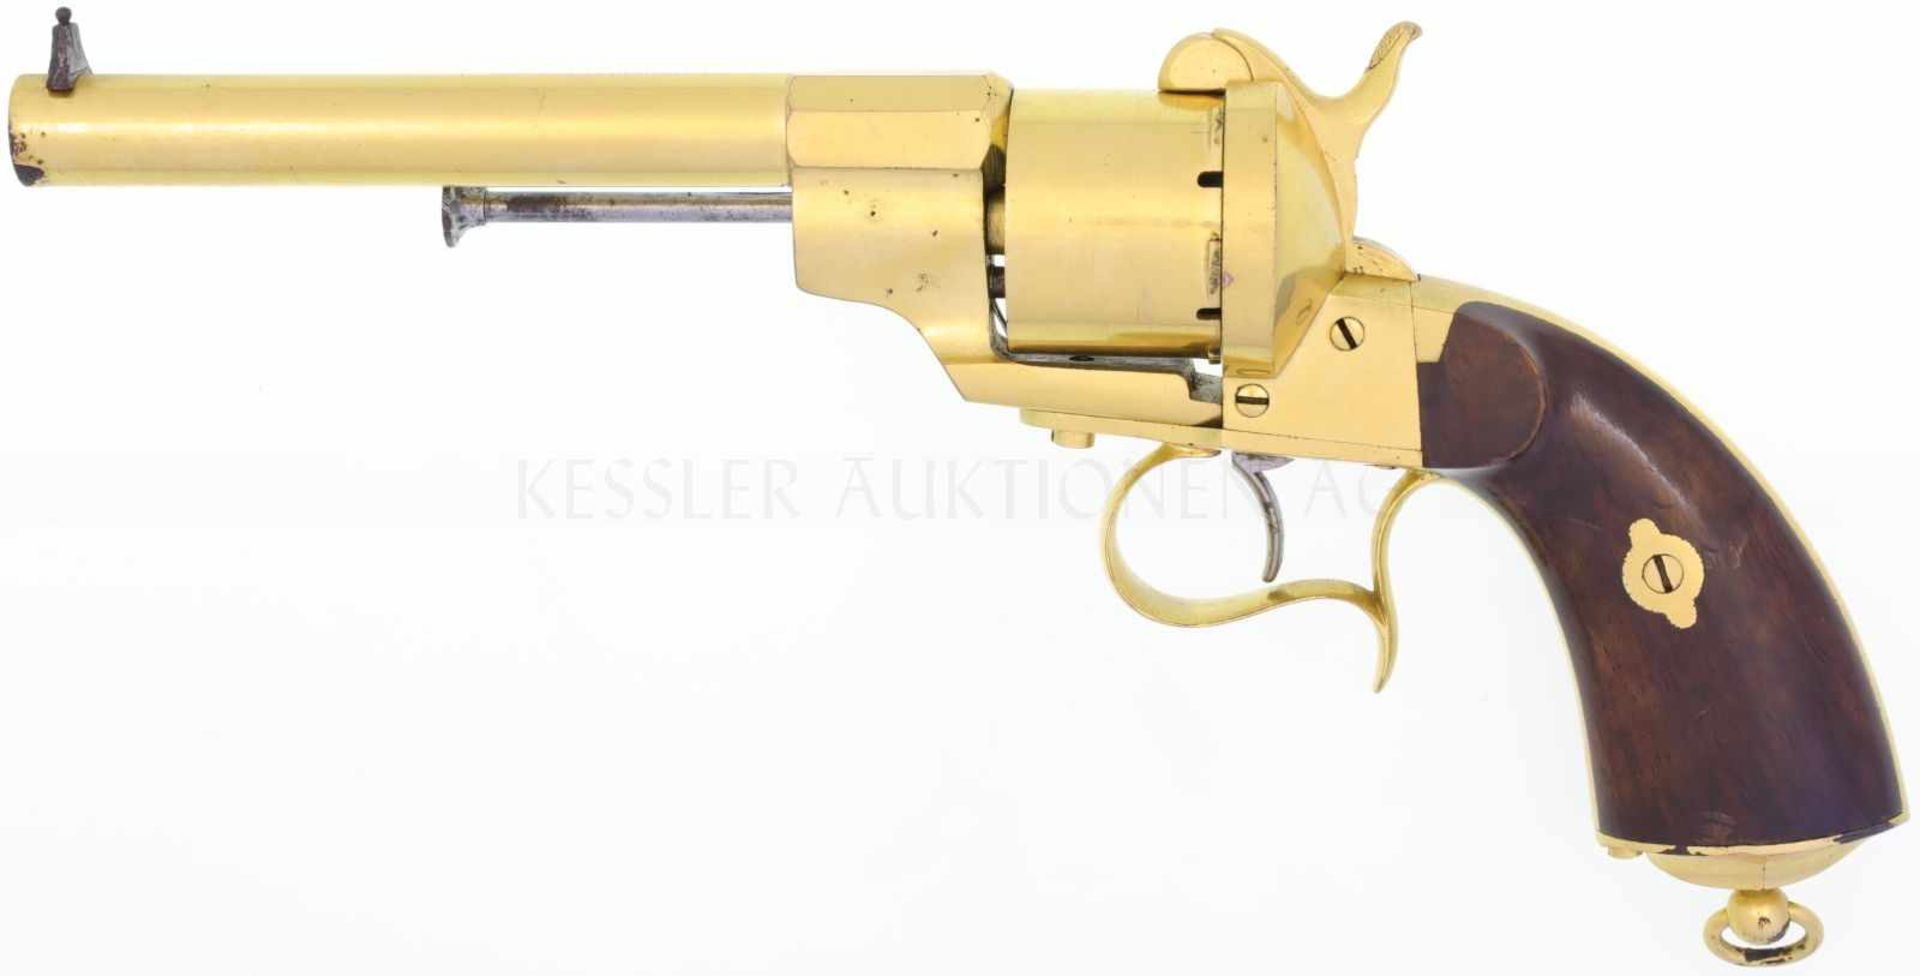 Revolver Lefaucheux, wie Versuch zu Ord.-Mod. 1858 der franz. Kriegsmarine, vergoldet, Kal.